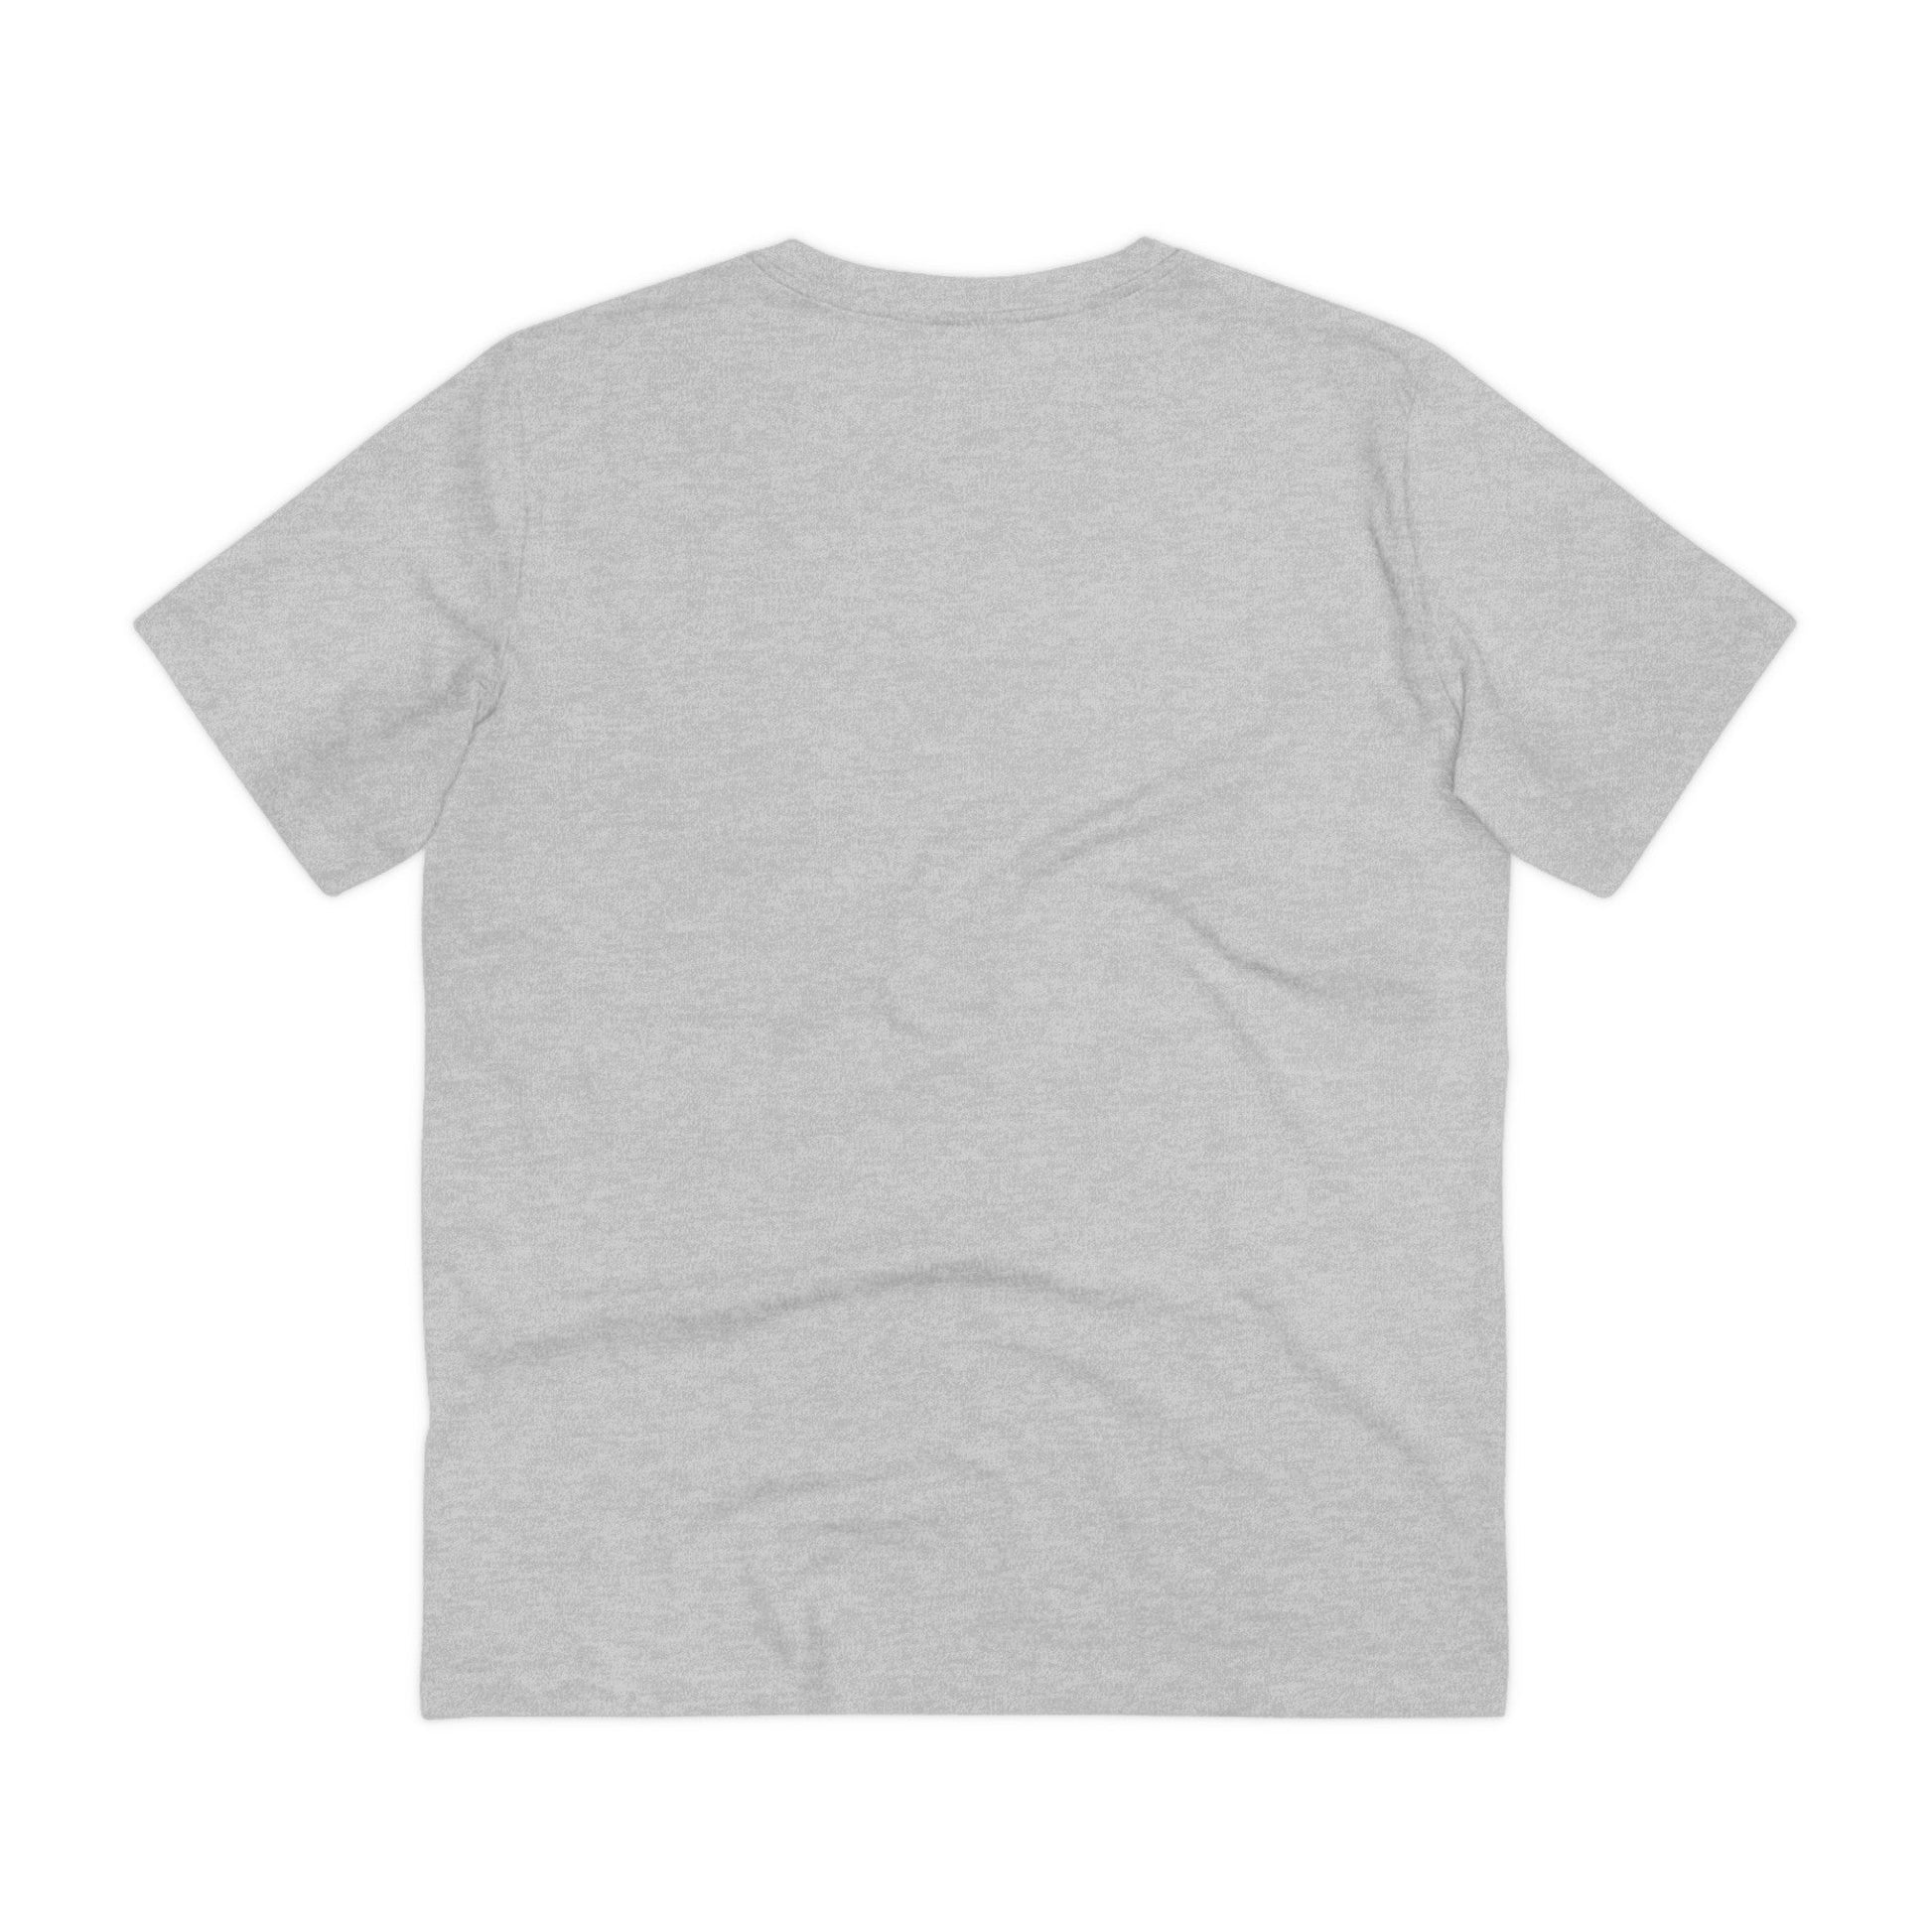 Printify T-Shirt Saufy Unicorn - Unicorn World - Front Design